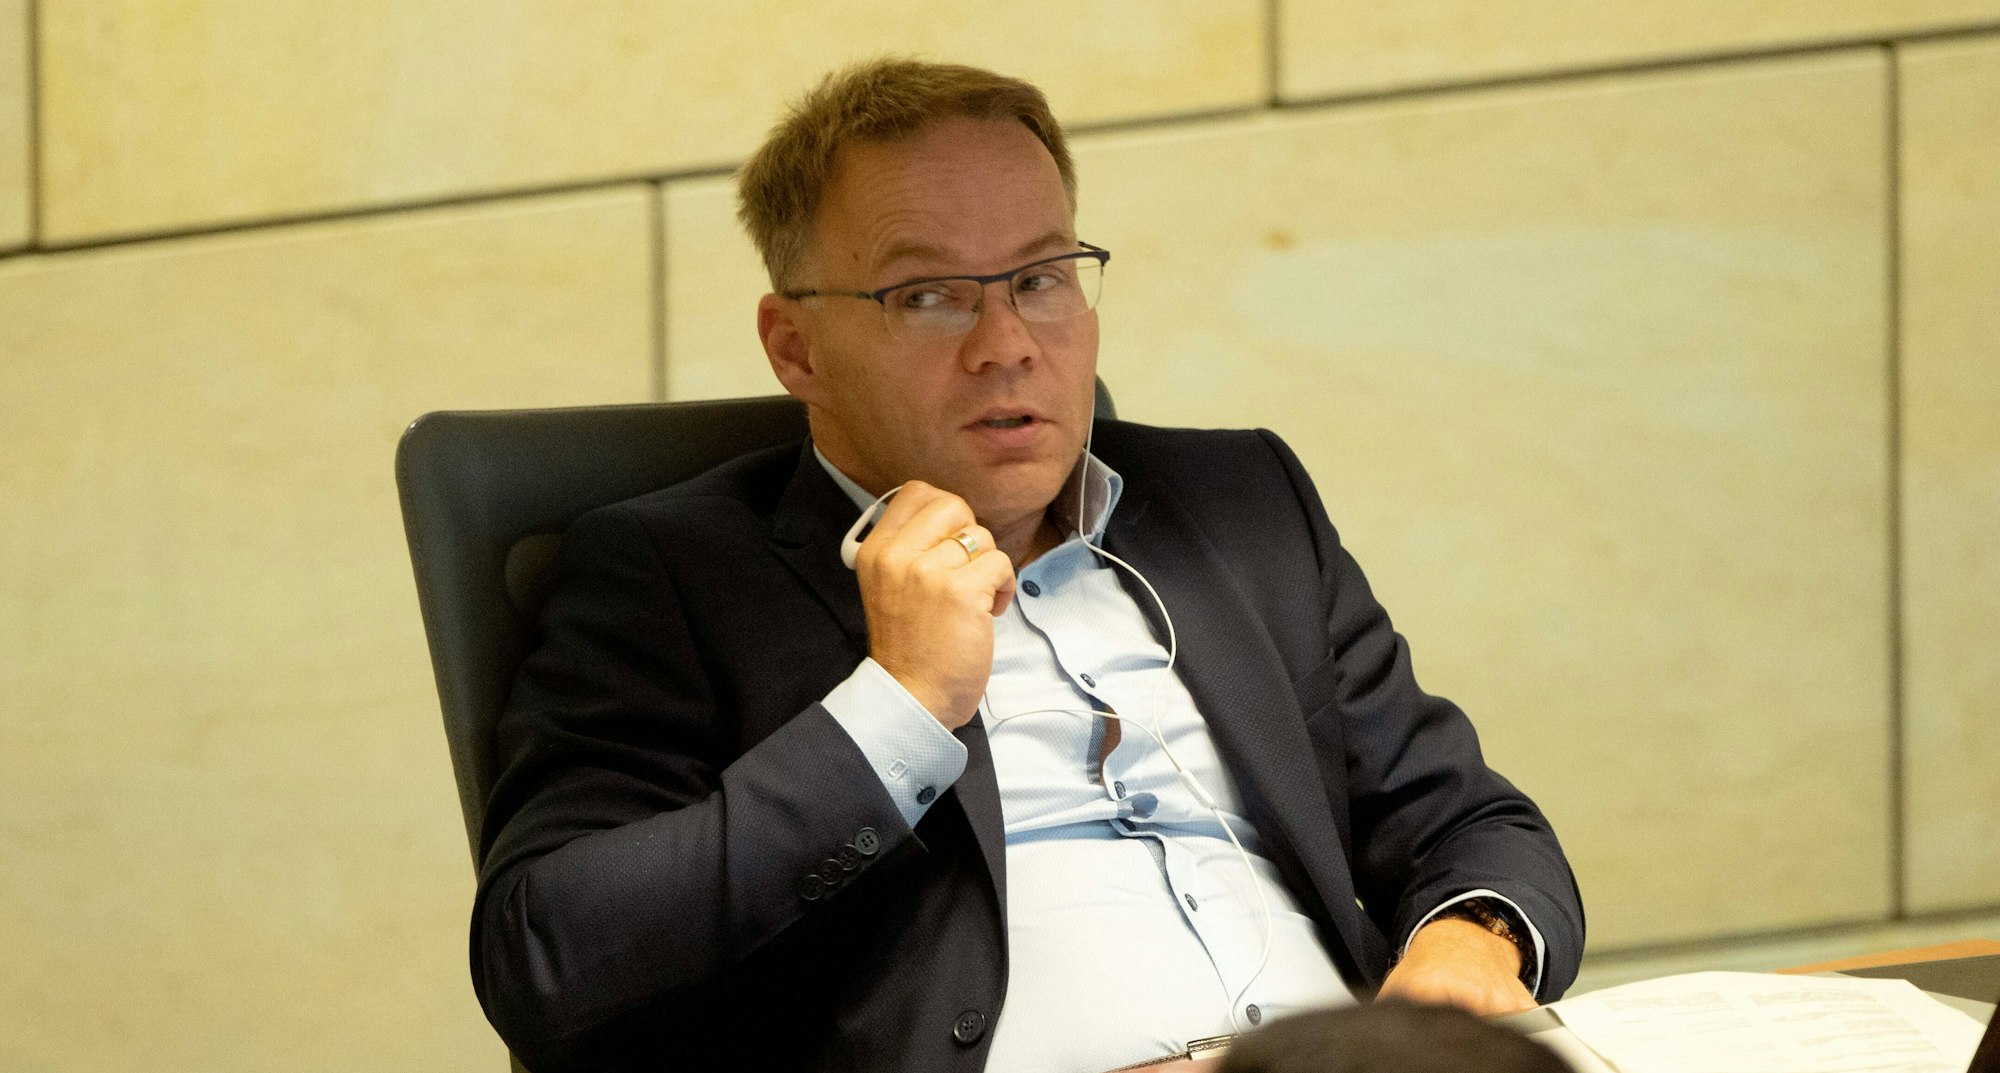 Der fraktionslose Christian Blex bei der 12. Sitzung des Landtags Nordrhein-Westfalen. Er sitzt auf einem Sessel, trägt Anzug und Brille.